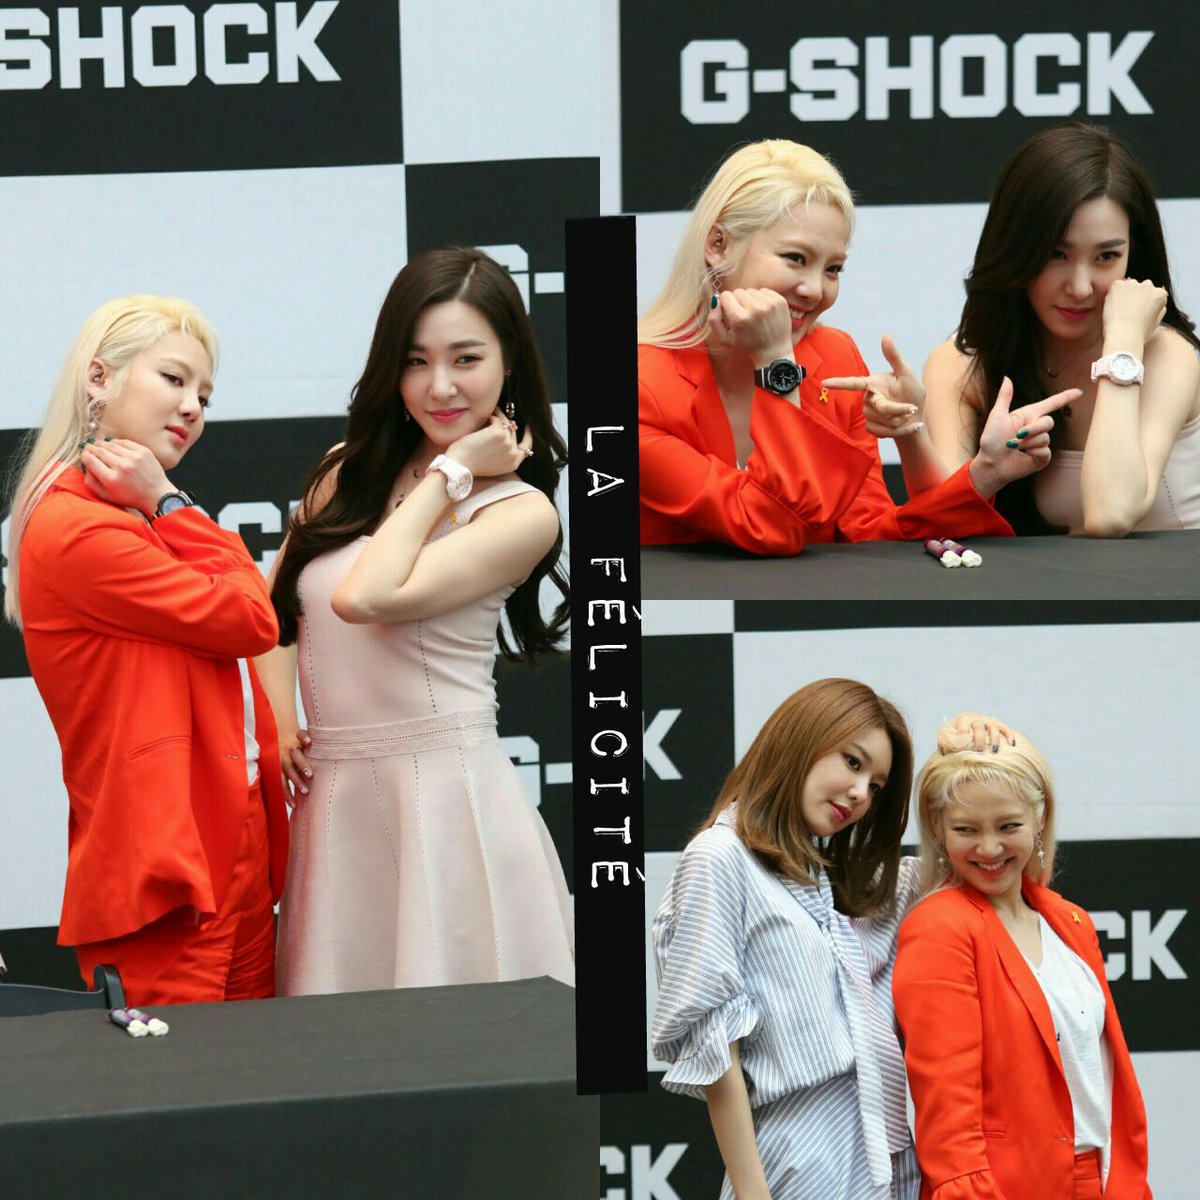 [PIC][16-04-2017]TaeYeon – Sunny – Tiffany – HyoYeon và SooYoung tham dự buổi Fansign cho “G-SHOCK CRAZY TOUGHNESS” vào chiều nay - Page 5 C9hDcpdUAAAMLix